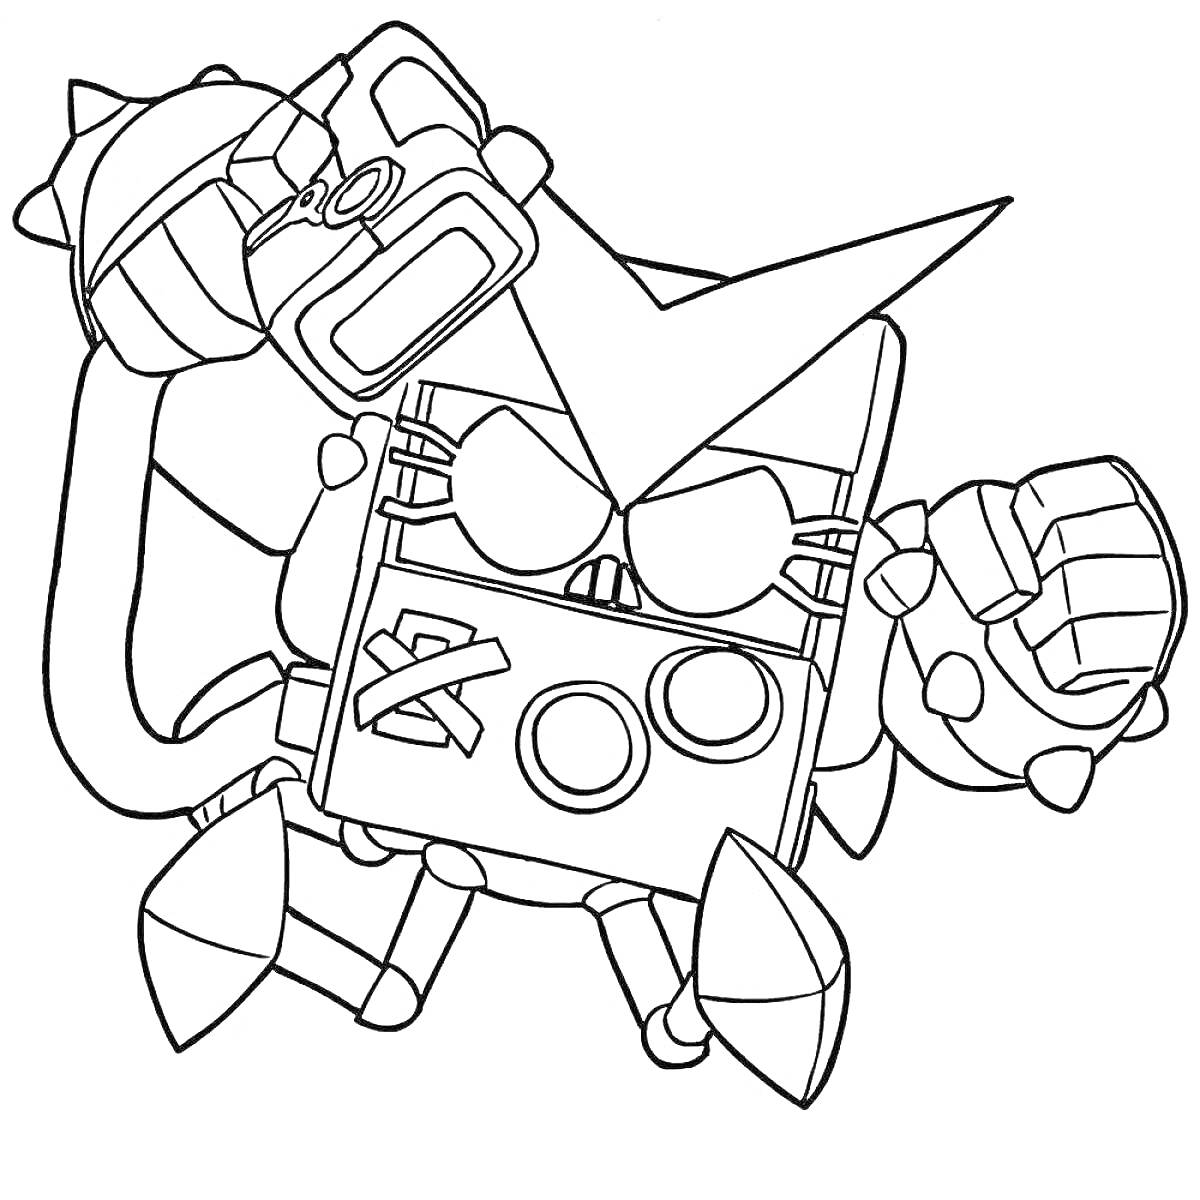 Раскраска Ворон Браво Старс с острыми шипами на локтях и кулаках, закрывающий лицо маской с двумя кругами и крестиком, в поднятой правой руке держит бомбу с шипами